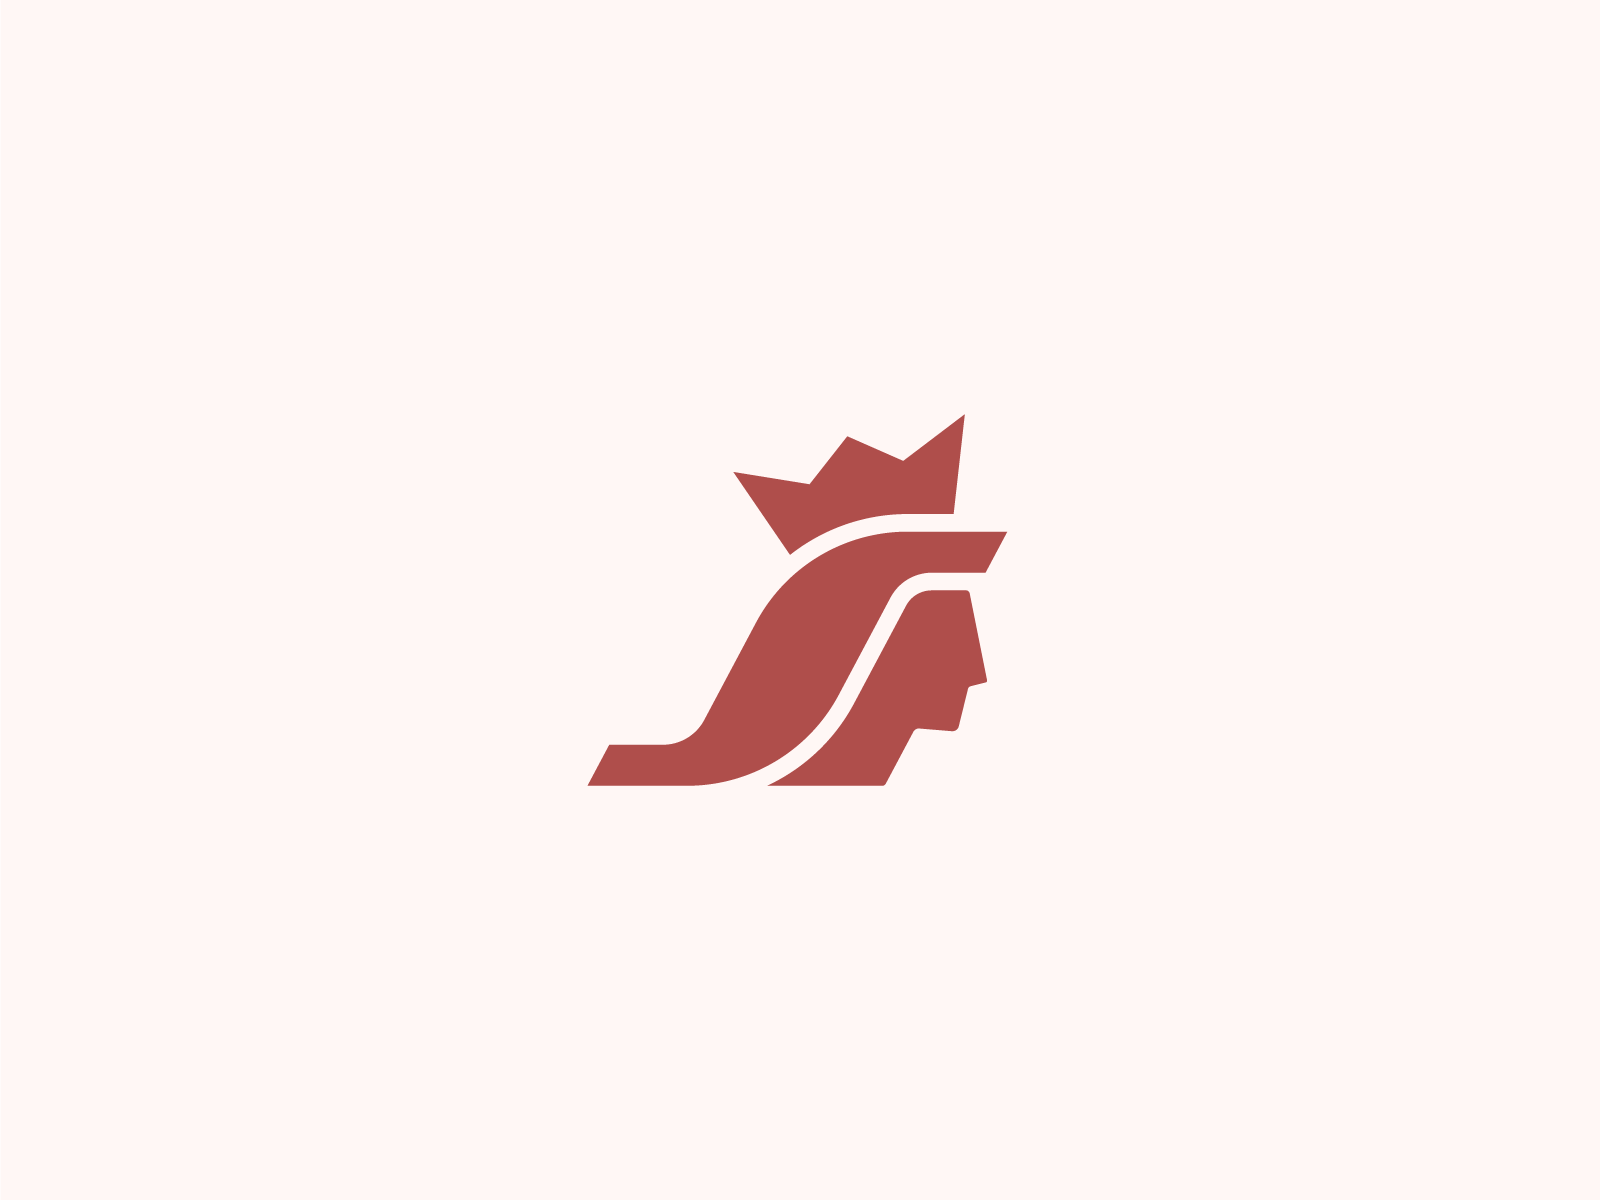 Queen + letter S logo mark by Nemanja Vilovski on Dribbble